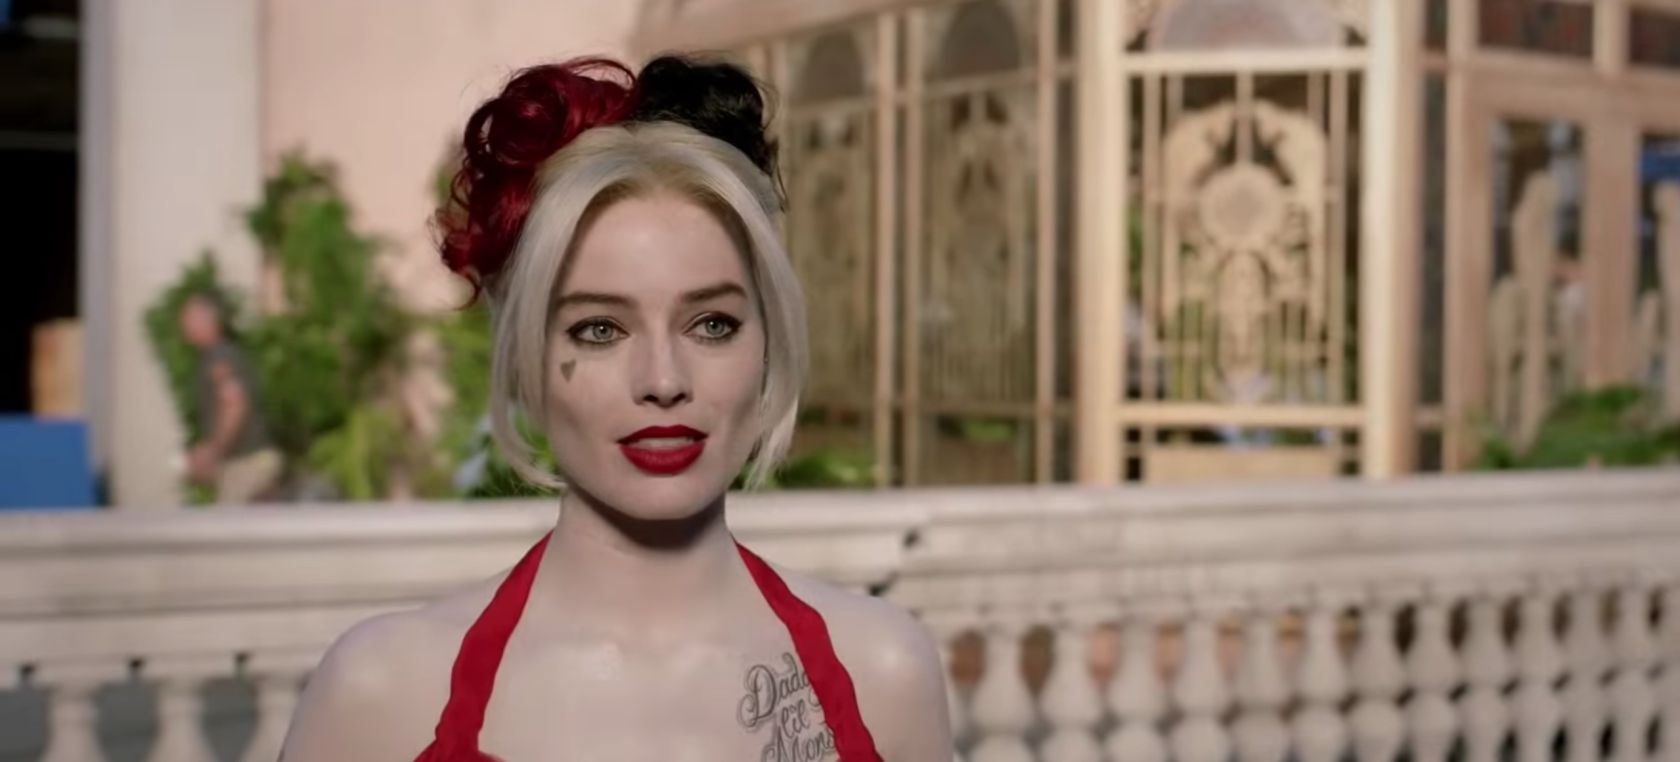 Final cocodrilo Continuar Harley Quinn cambia de look, así luce Margot Robbie con nuevo traje | Cine  y Televisión | LOS40 México